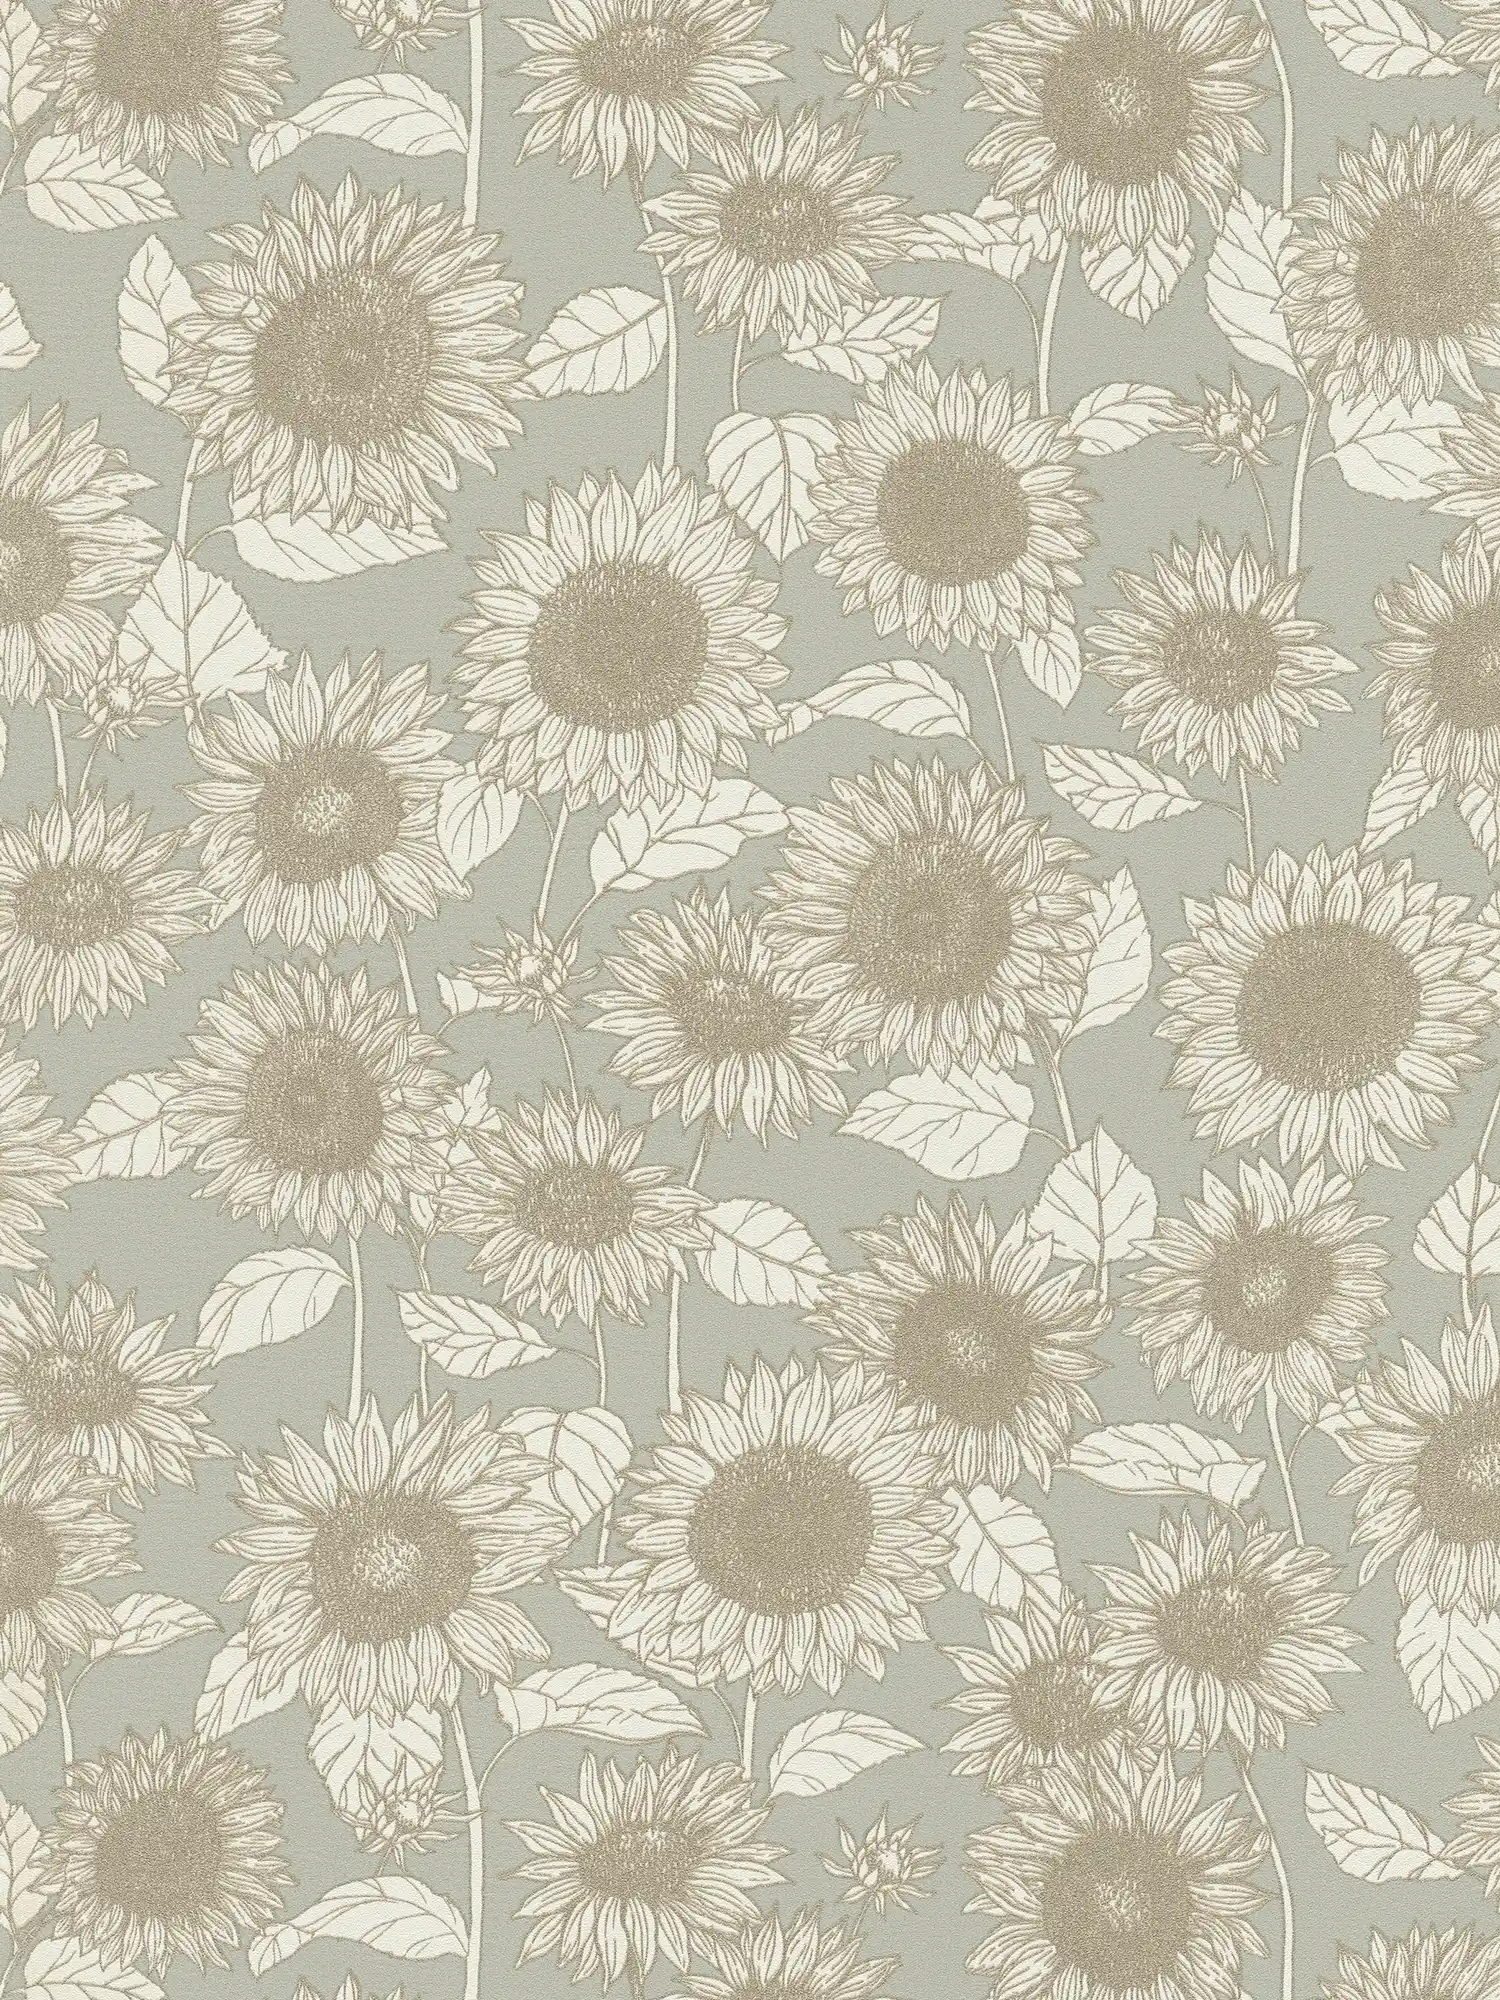 Carta da parati effetto metallizzato Sunflowers - beige, grigio, crema
